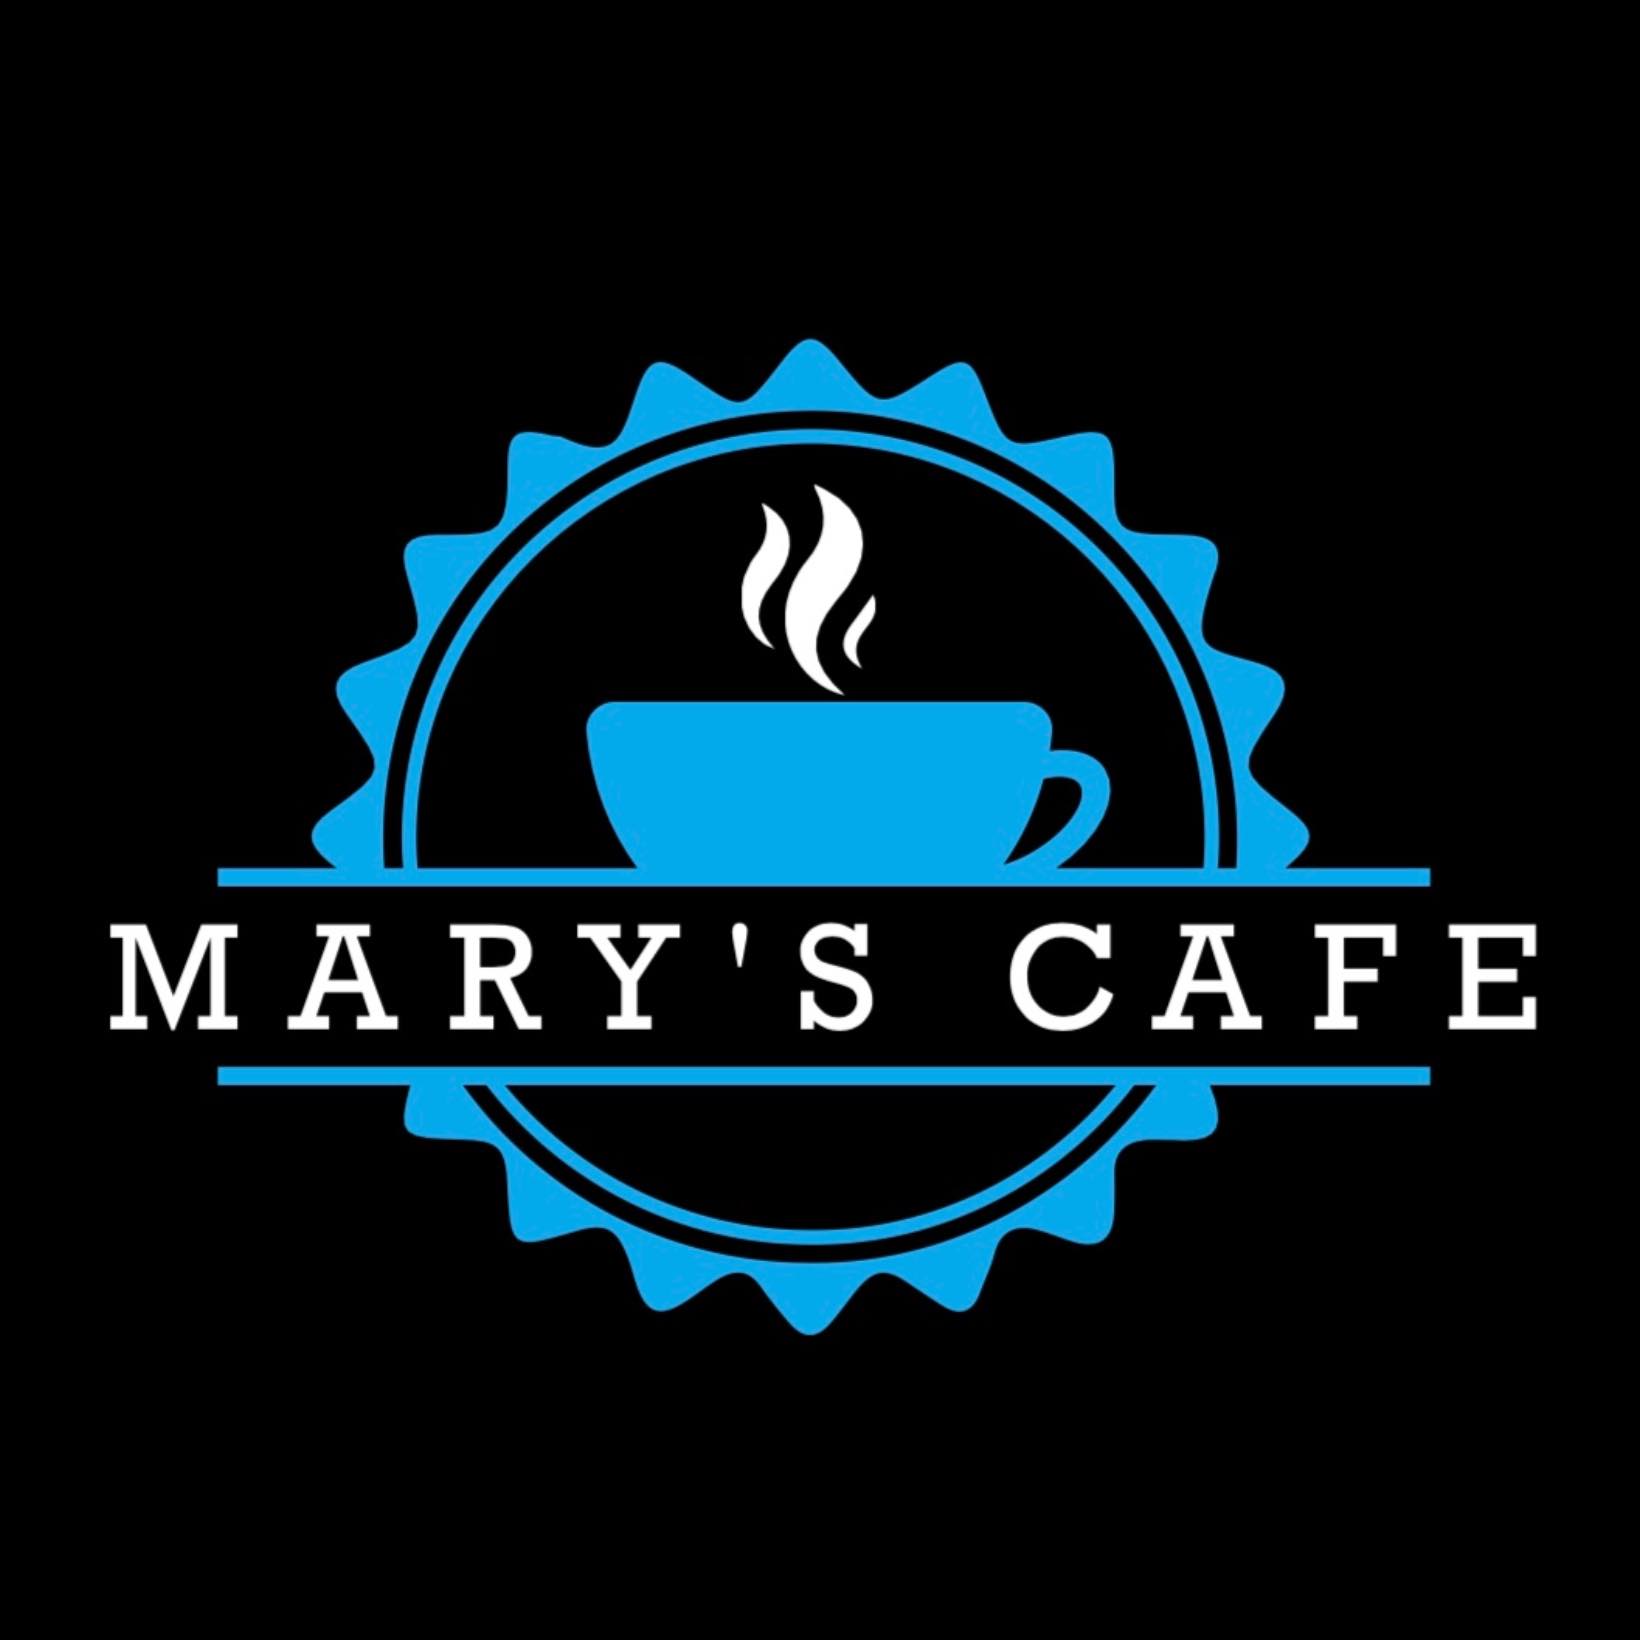 Mary's Cafe logo